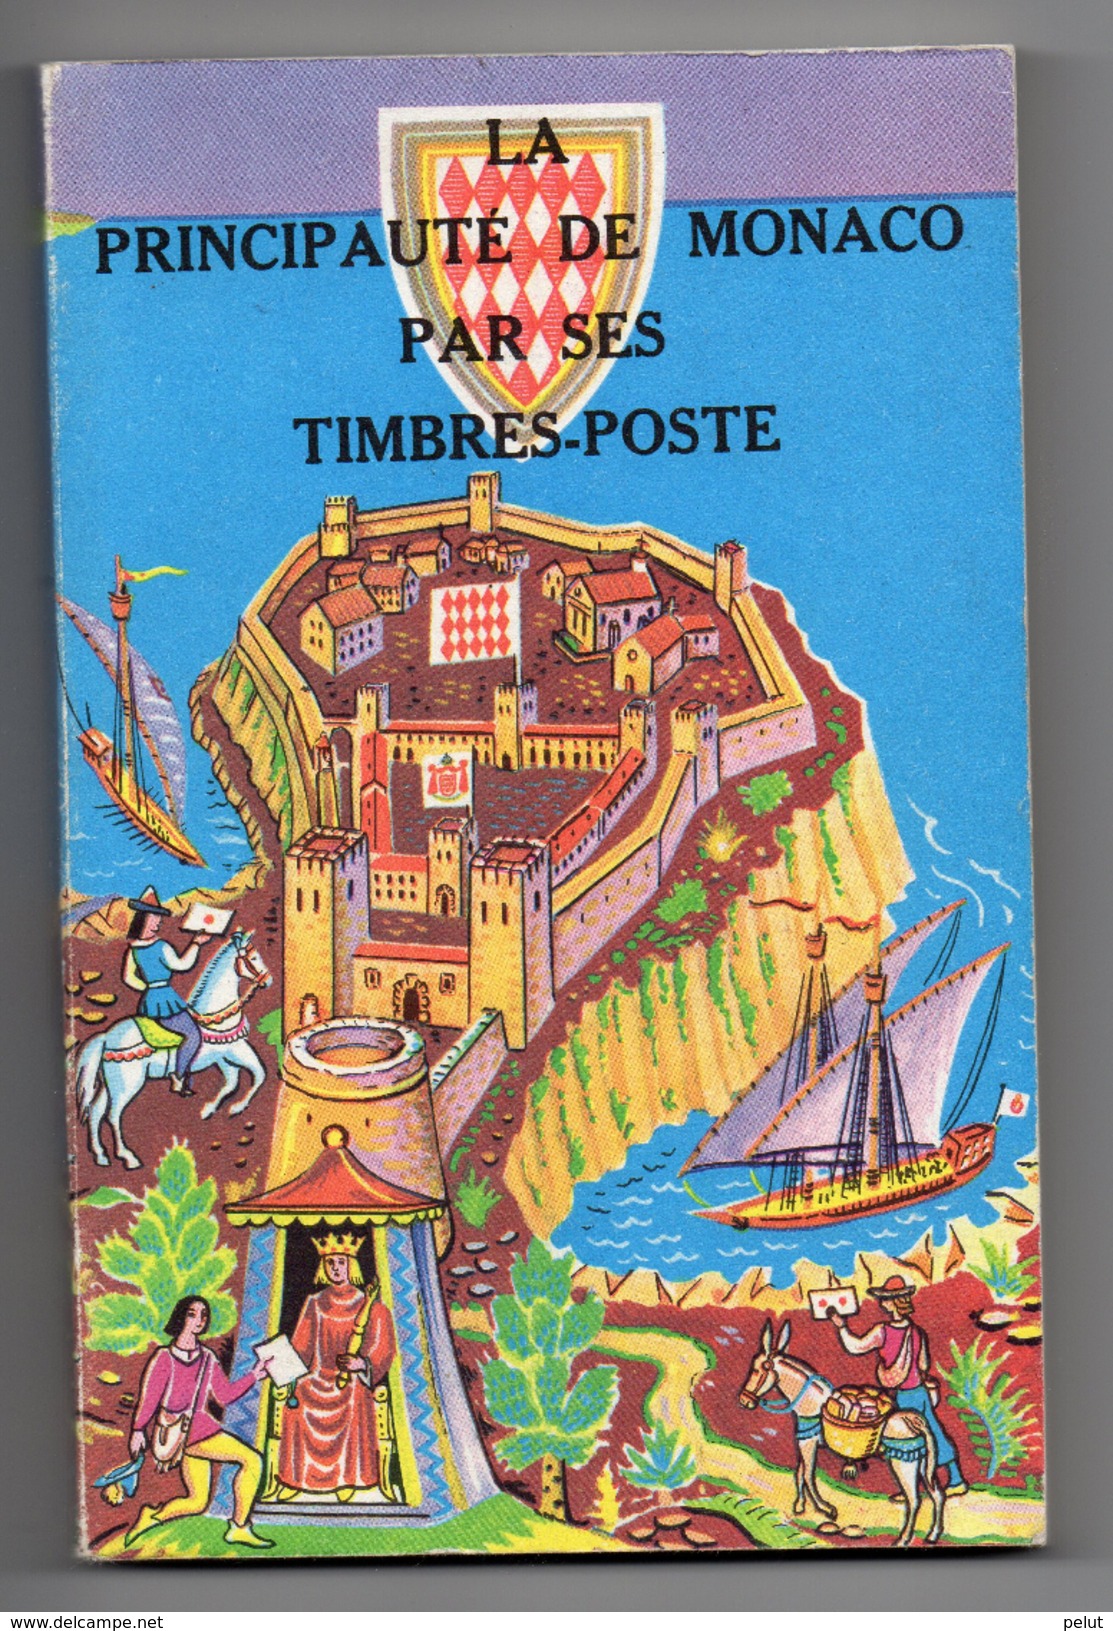 La Principauté De Monaco Par Ses Timbres-poste, édition 1972 Par H. Chiavassa - Philatélie Et Histoire Postale